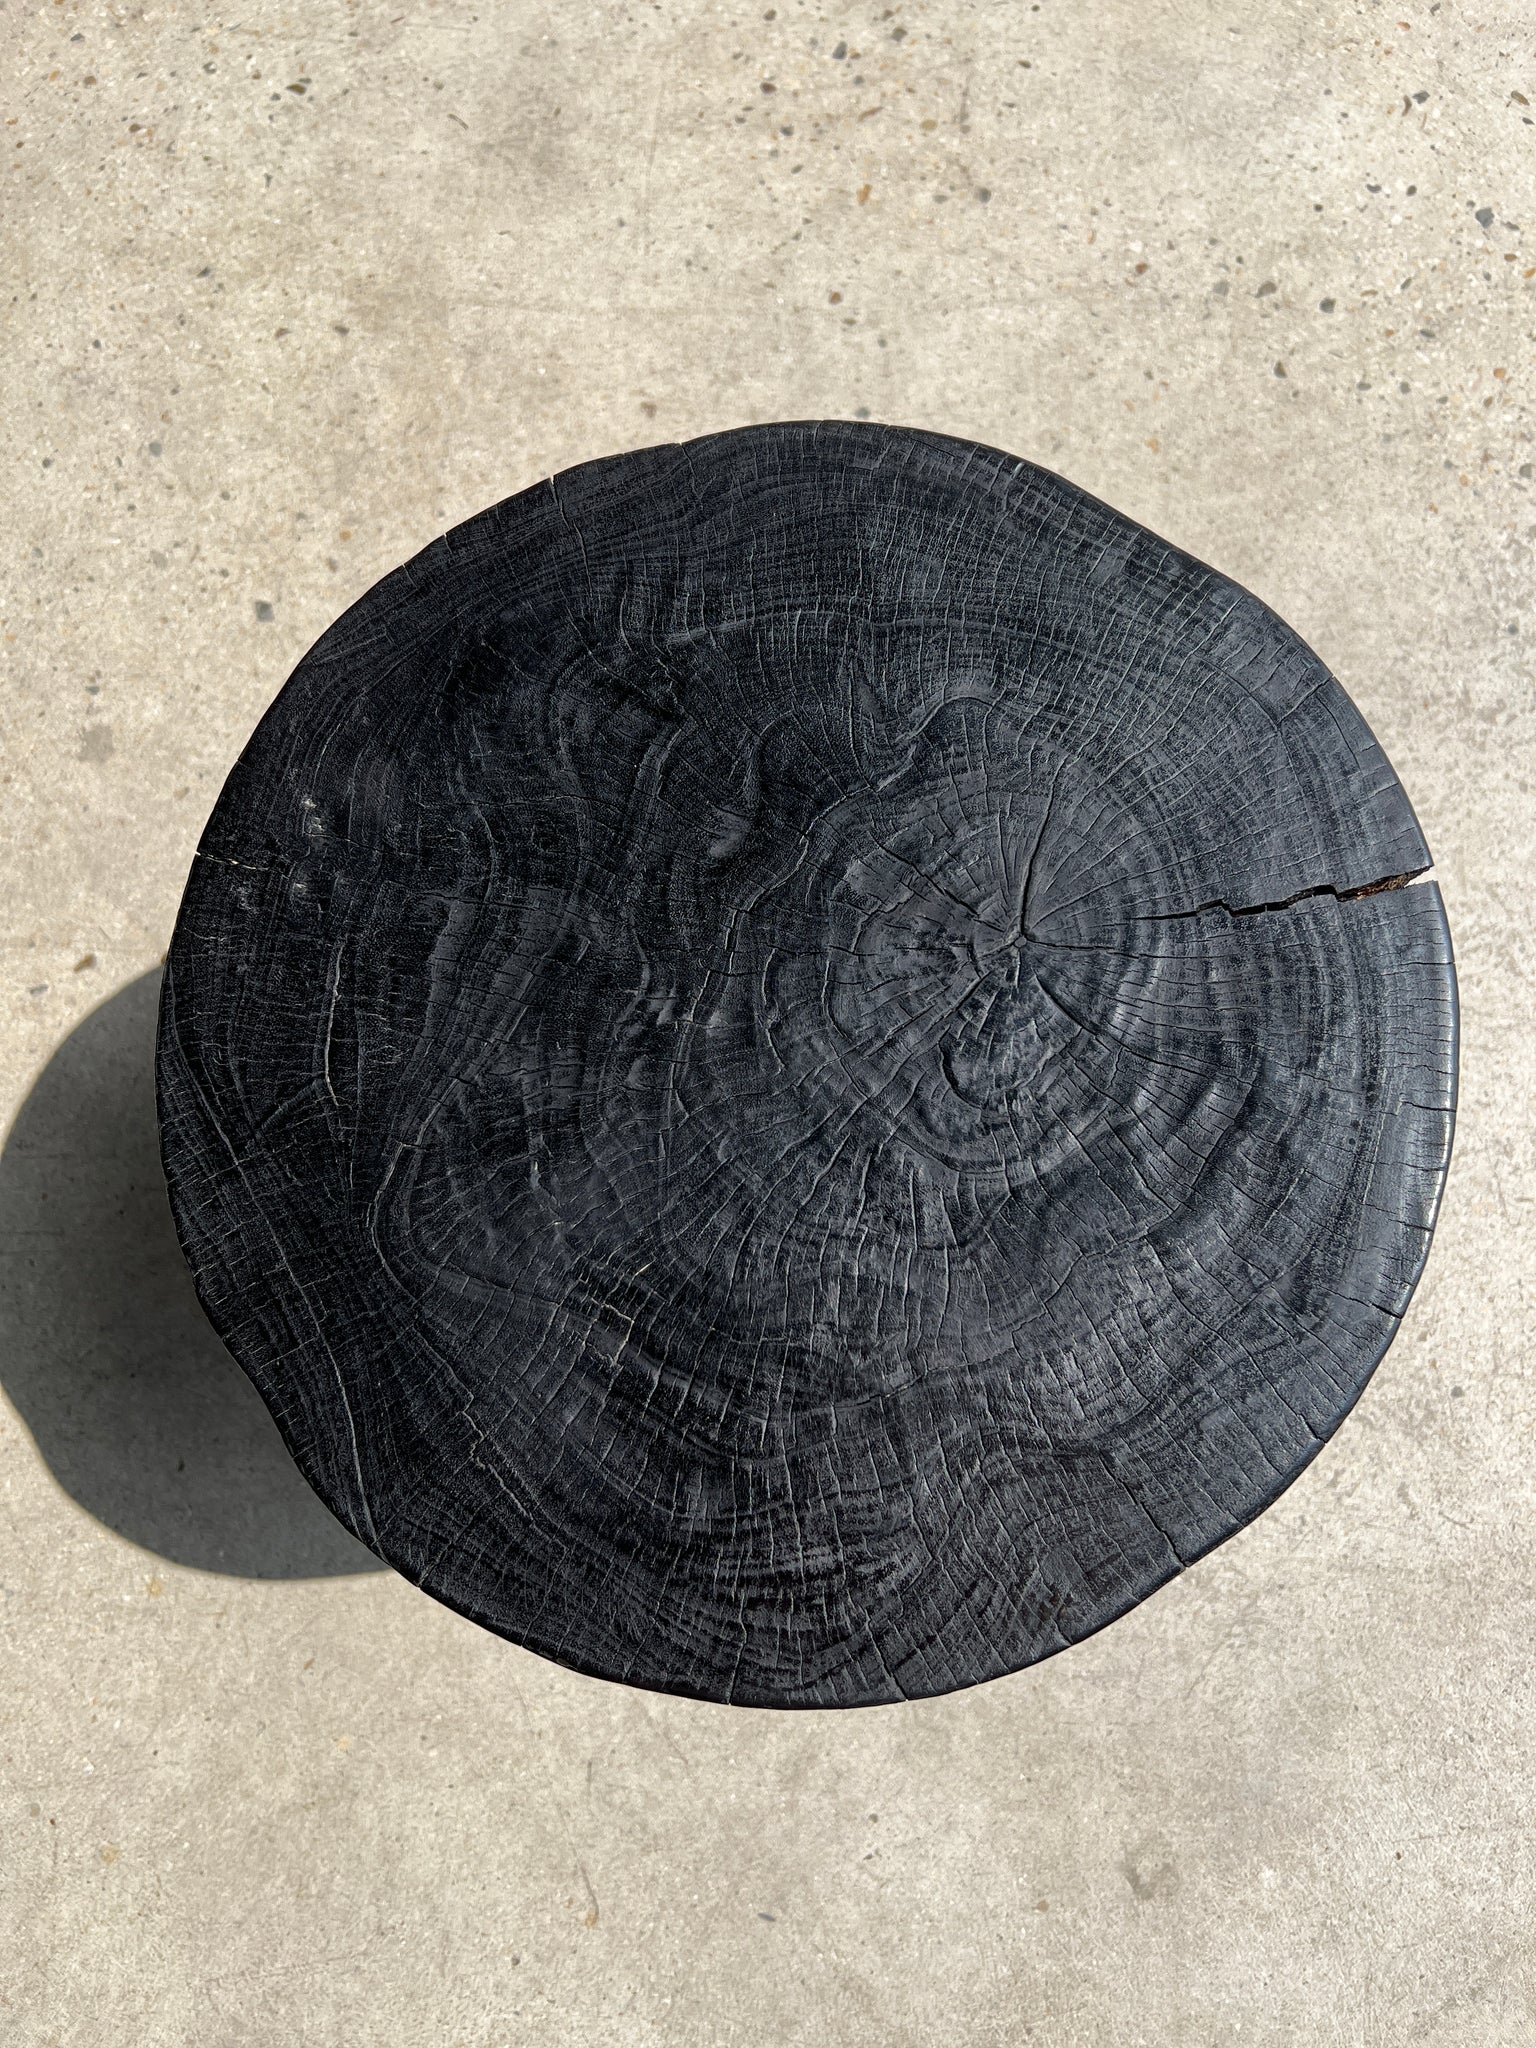 Bout de canapé monoxyle en manguier noir tripode plateau demi sphère H:45 D:44